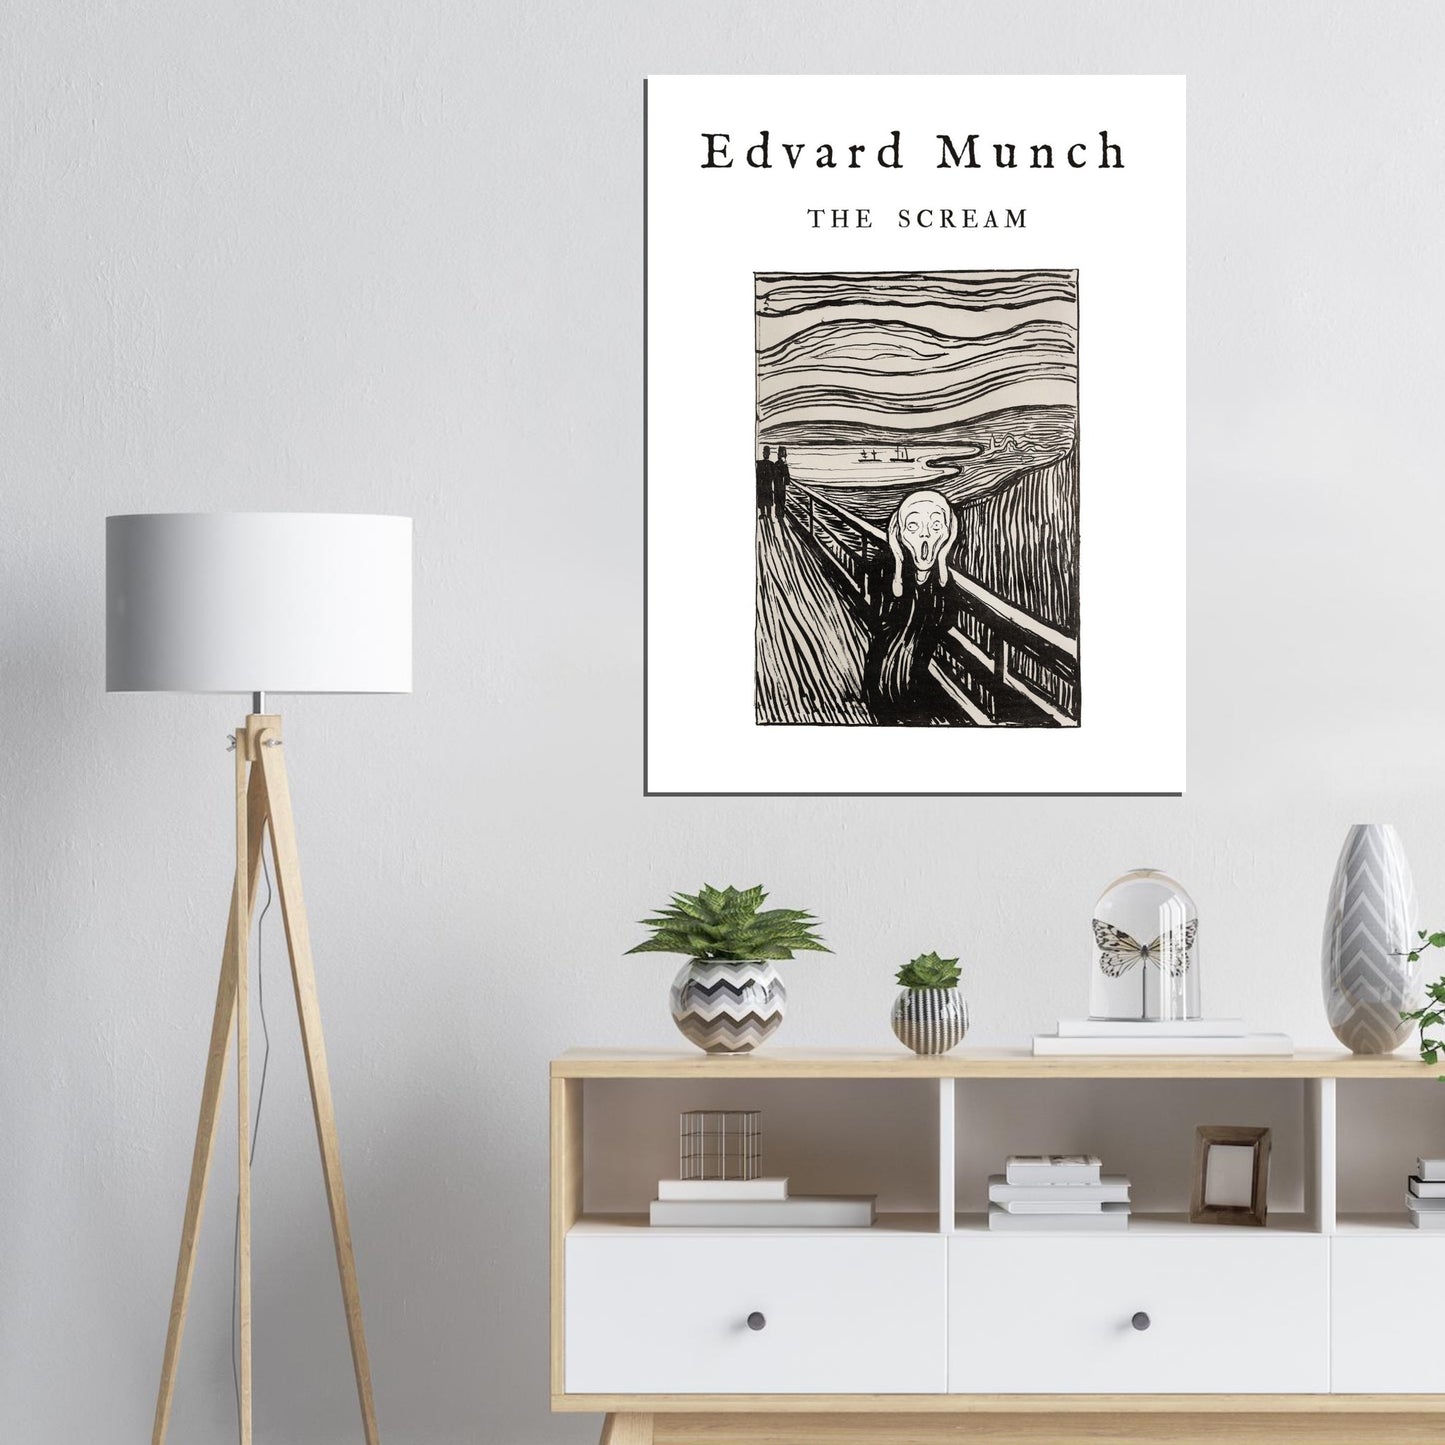 Plakat - Schrei - Edvard Munch (1895). Original vom Art Institute of Chicago